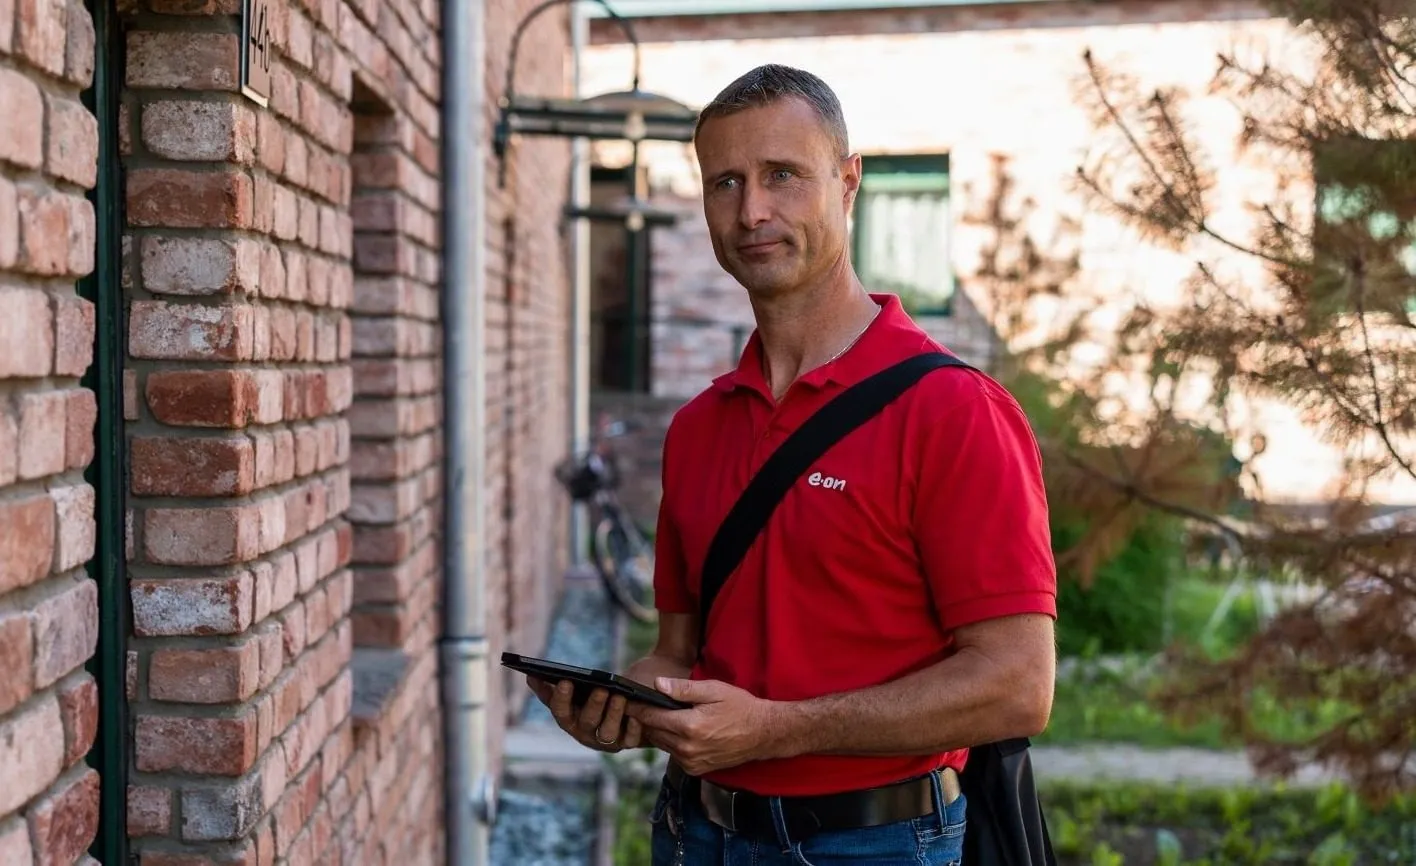 Mann mit roten Shirt und iPad vor Haus